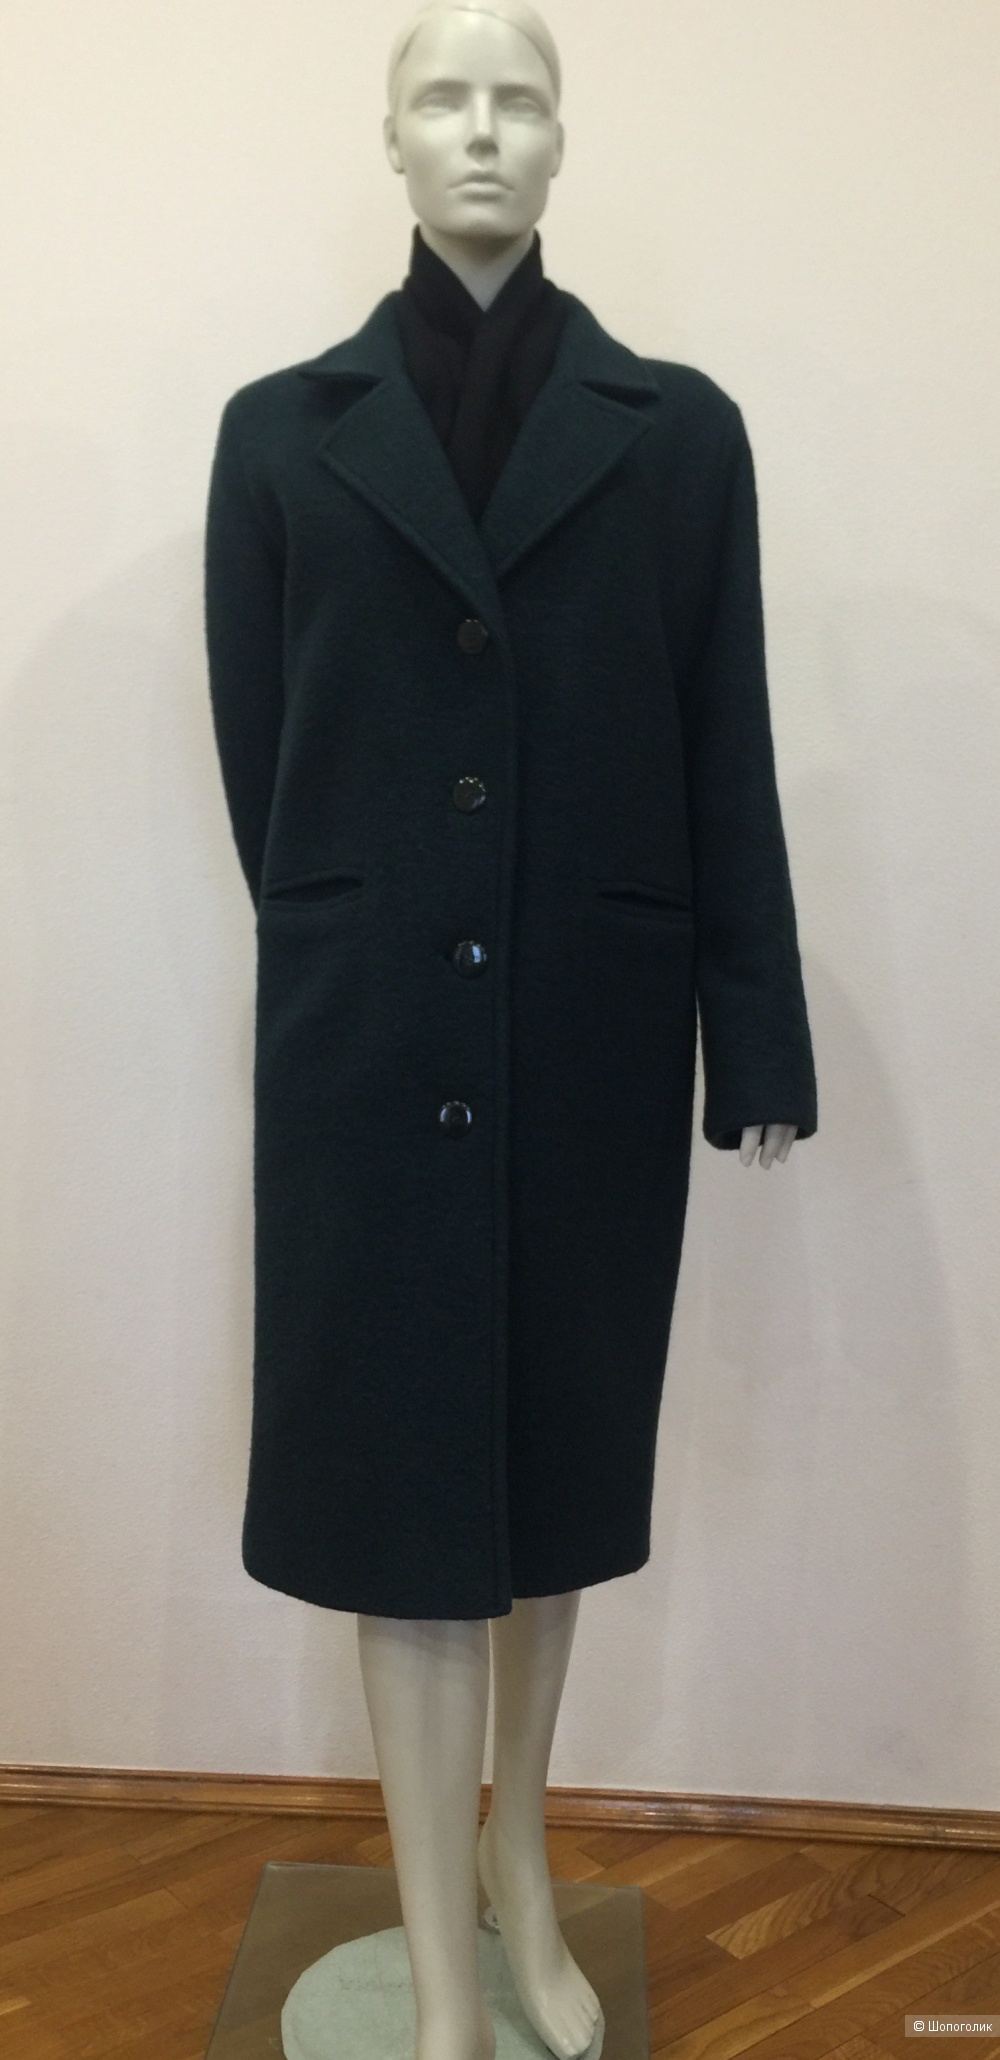 Пальто бренд Henry Cottons размер оверсайз от S до XL